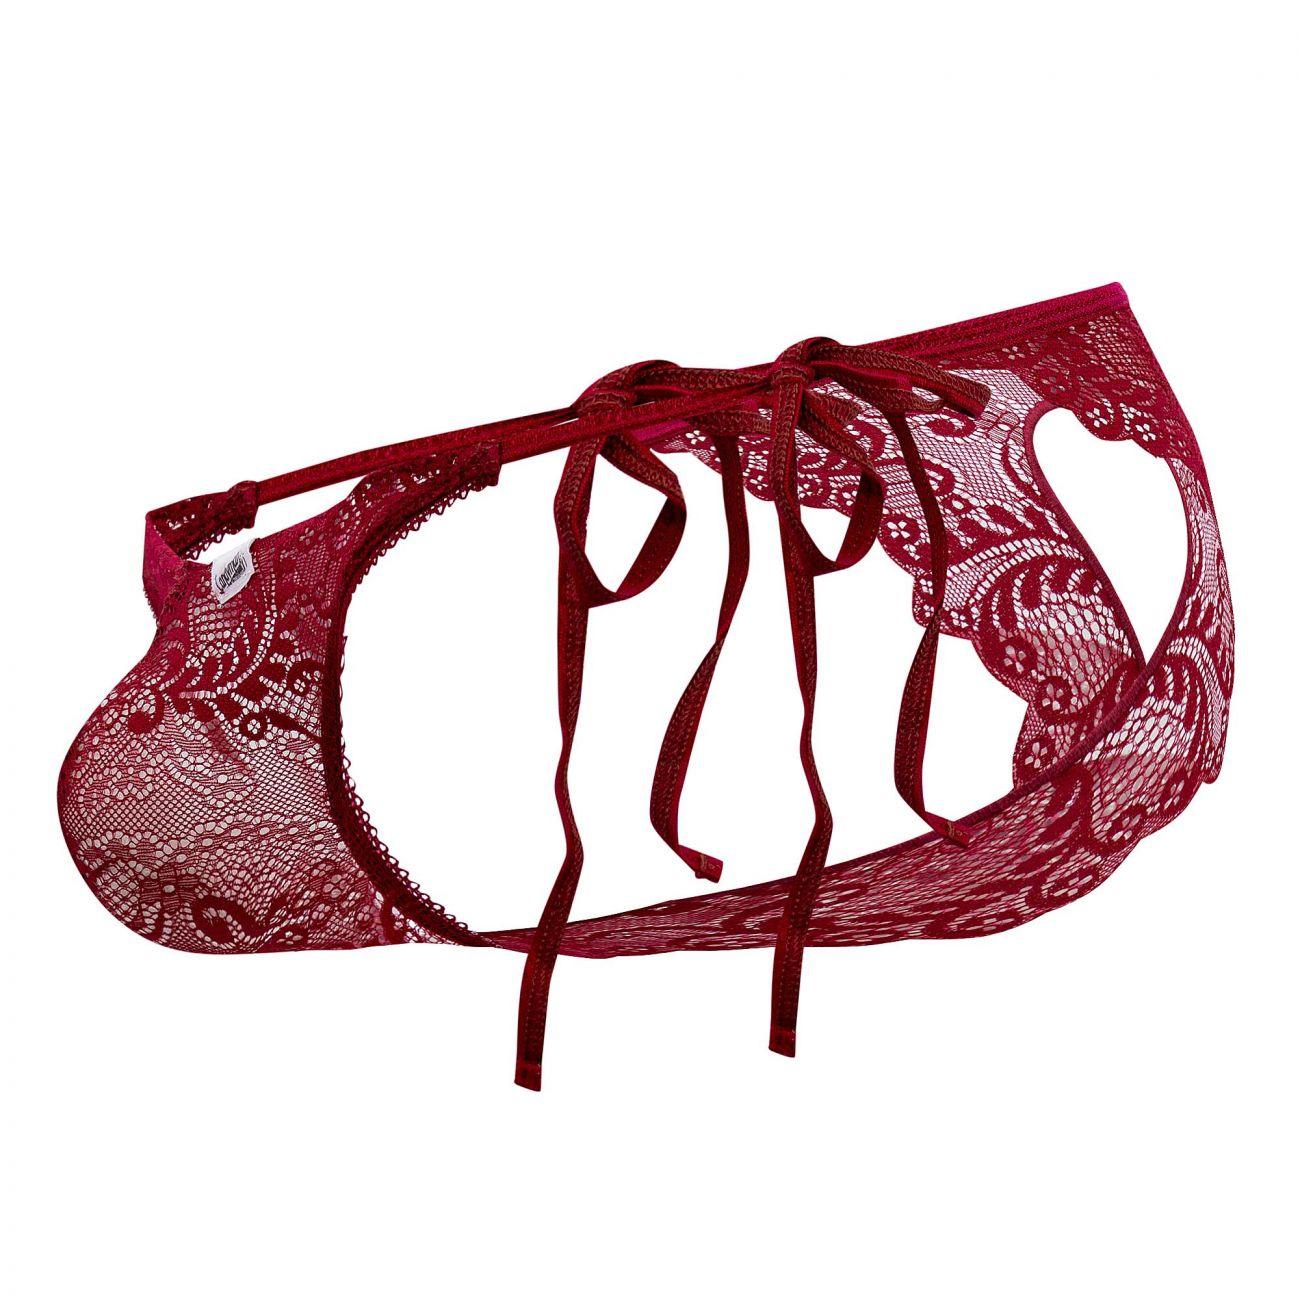 image of product,Lace Heart Bikini - SEXYEONE